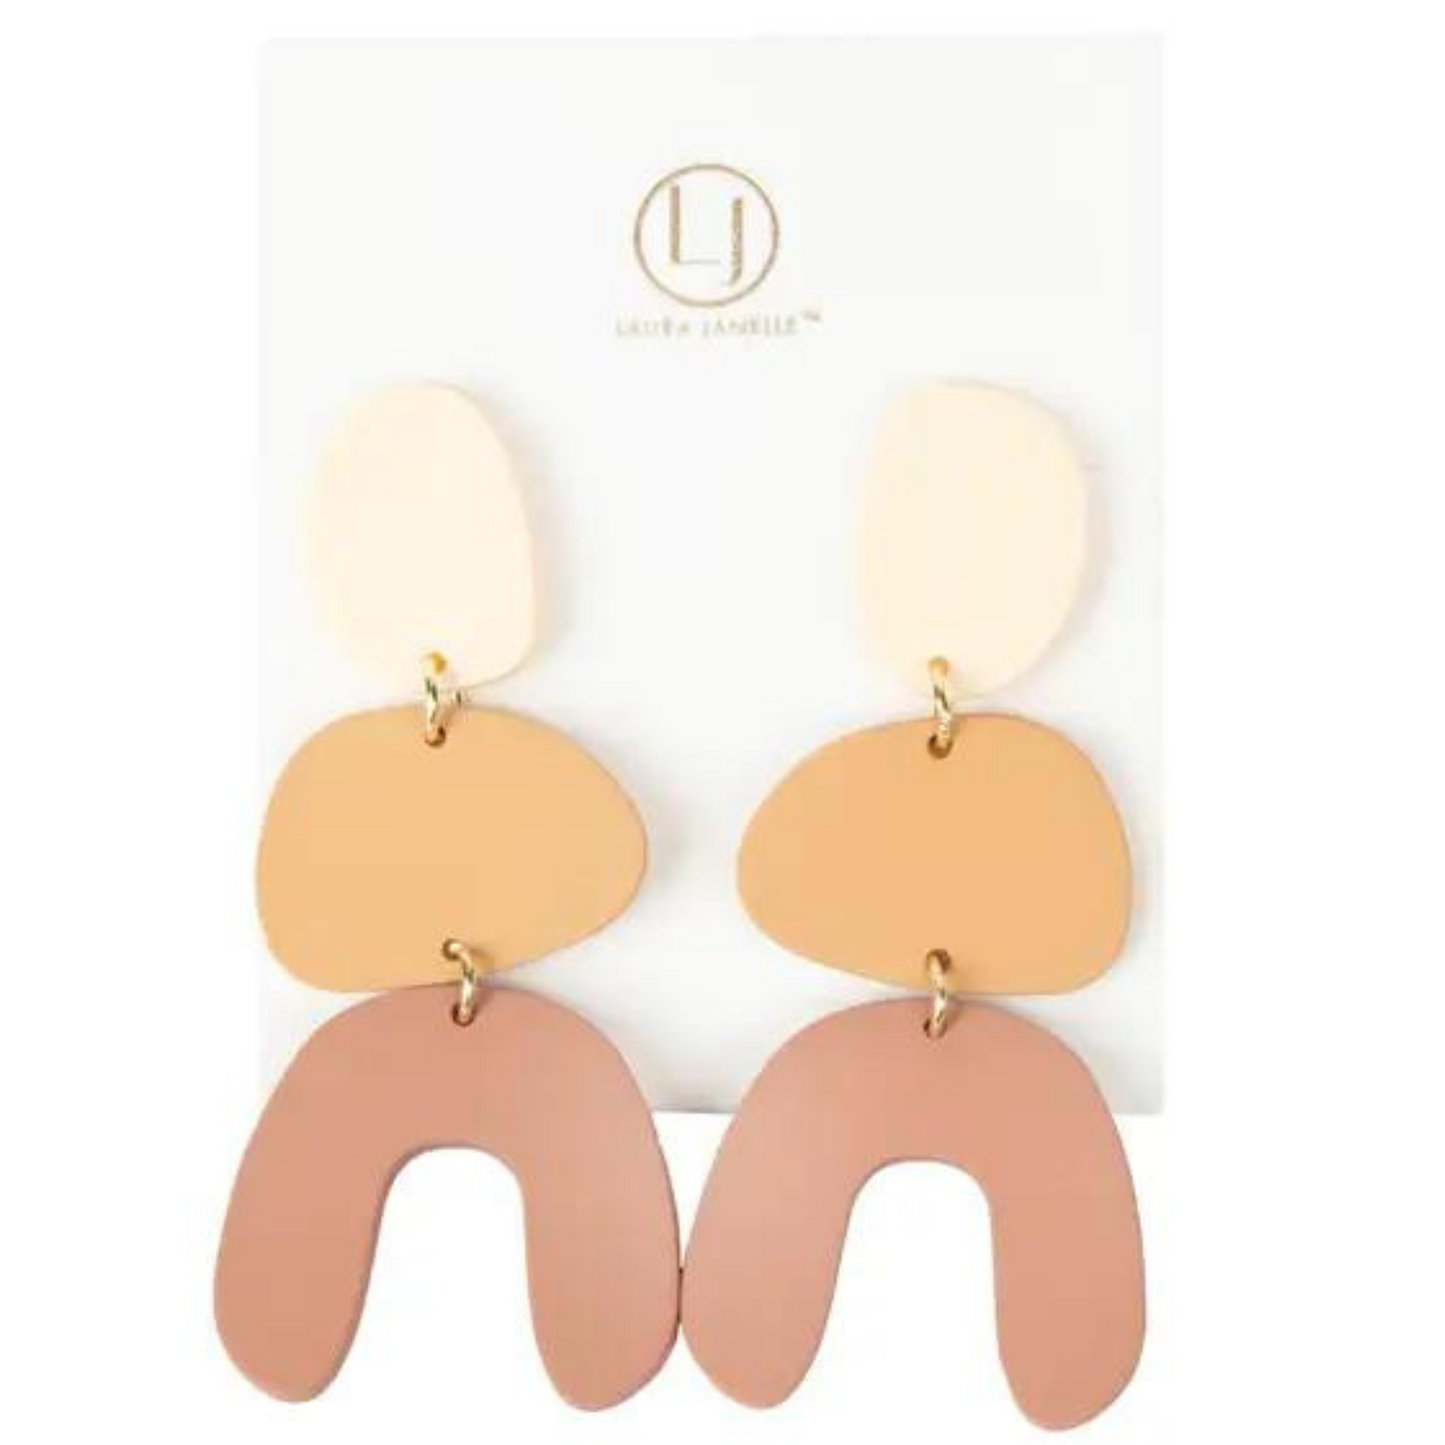 Clay arch dangle earrings in tan